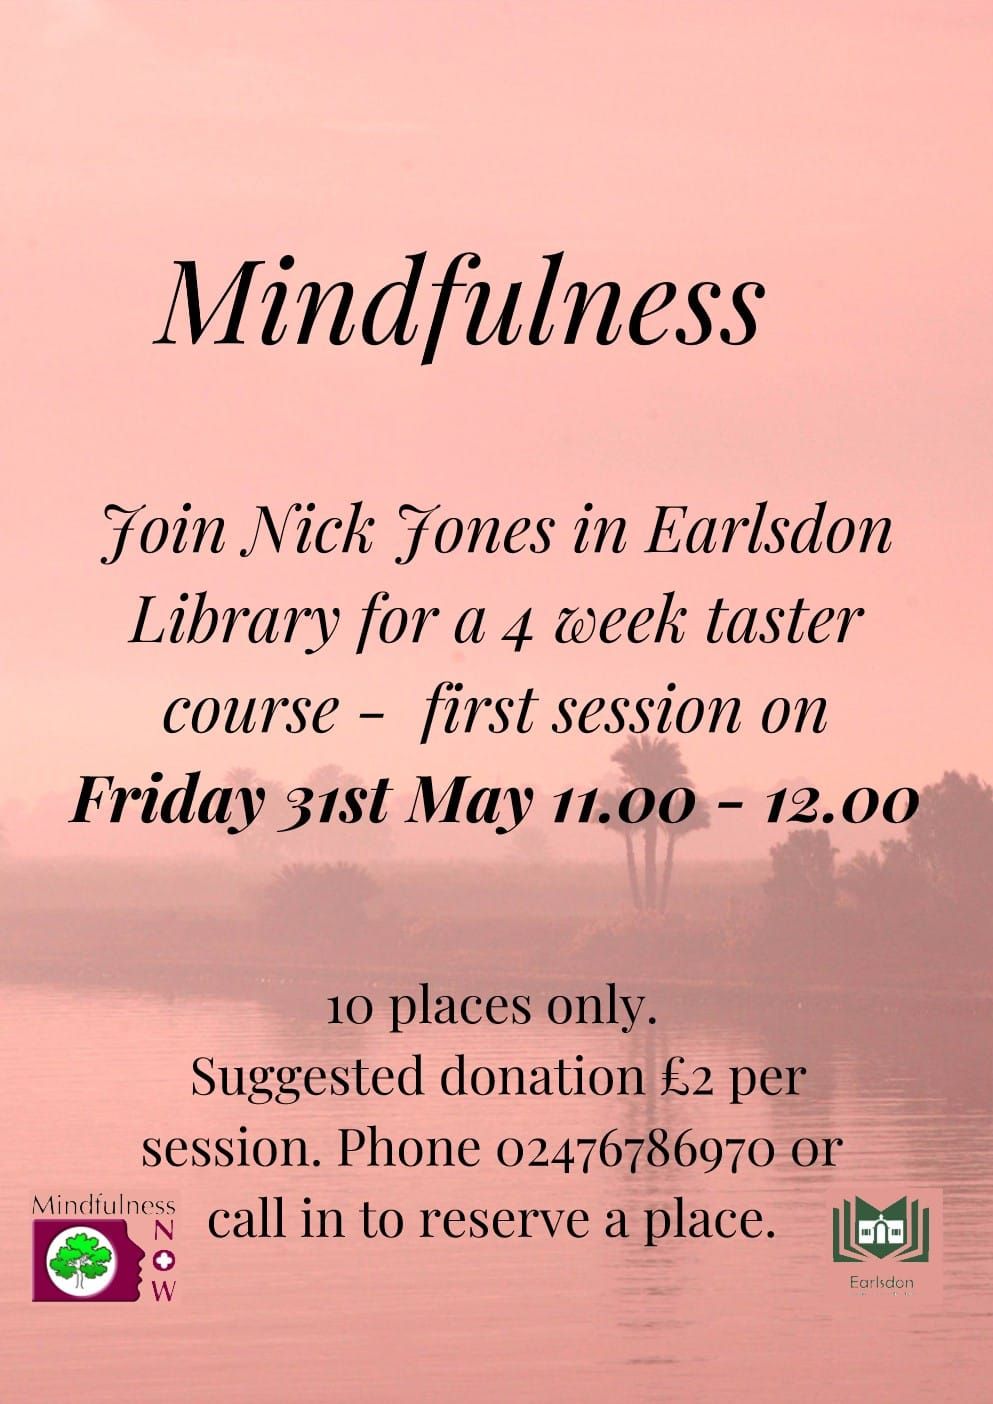 Mindfulness with Nick Jones